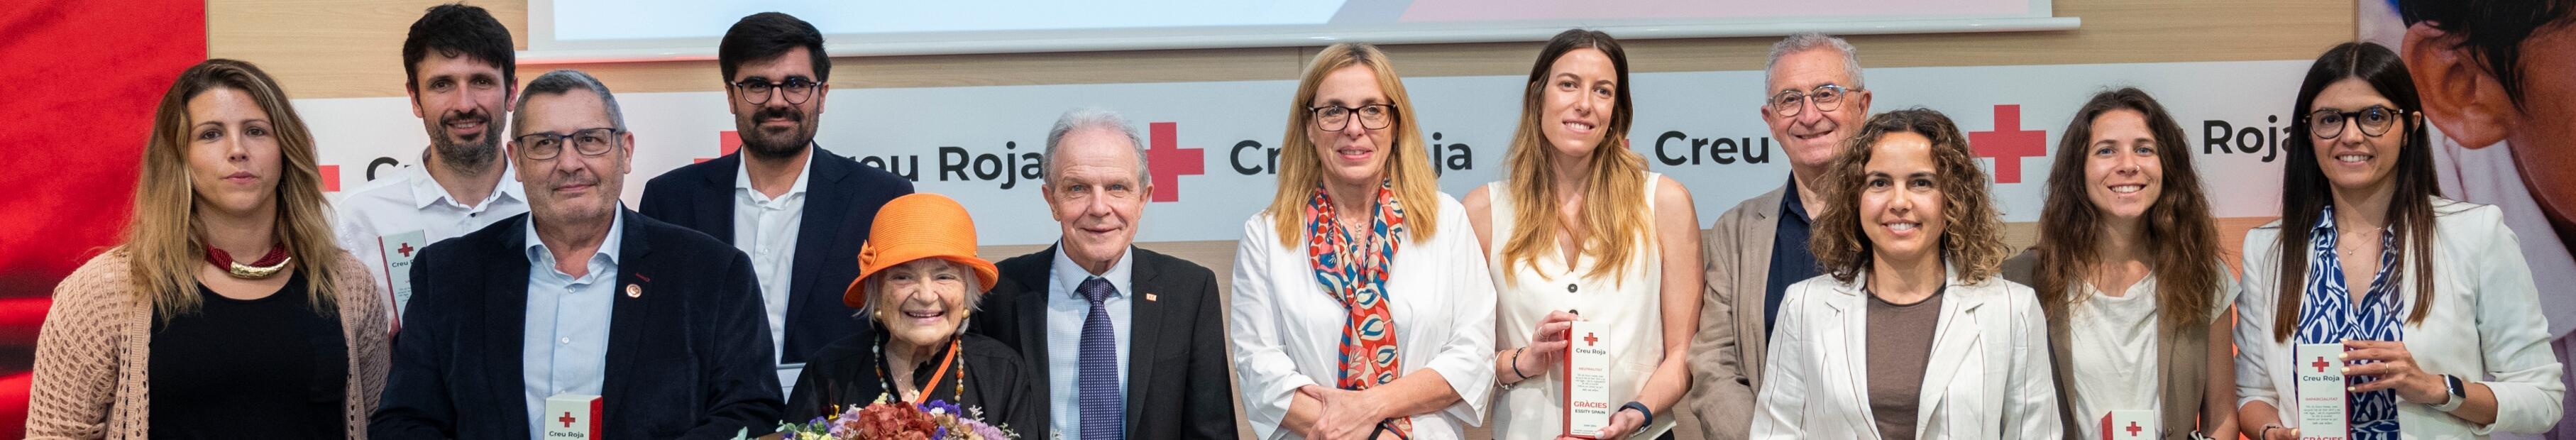 Acte d'agraïment a les empreses col·laboradores de la Creu Roja